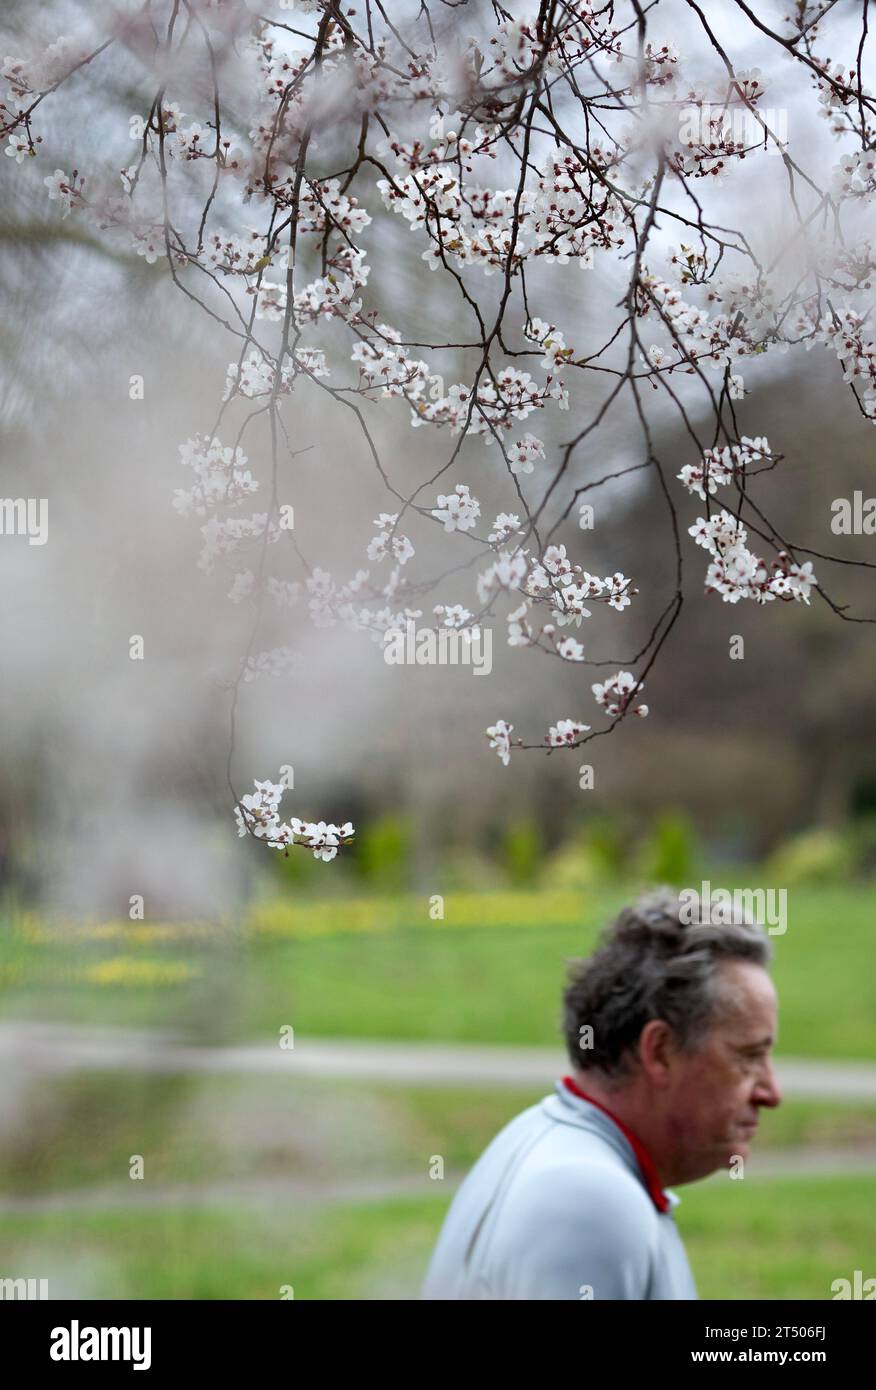 Blumen blühen, während die Menschen ihre Zeit im Regent’s Park in London verbringen. Stockfoto